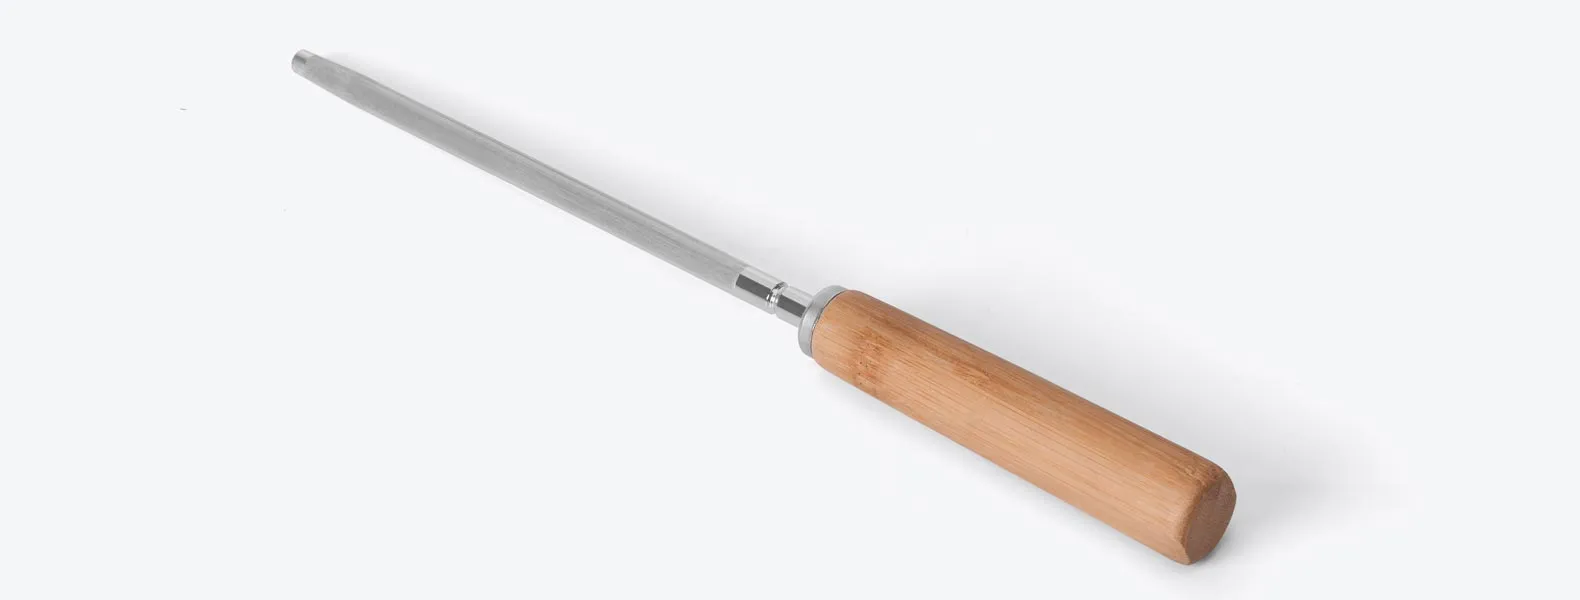 Conjunto de Faca em Bambu/Aço Inox. Acompanha faca 8'' e chaira em Bambu/Inox. Como cortesia, na faca 8 fazemos uma gravação com os cortes do boi.